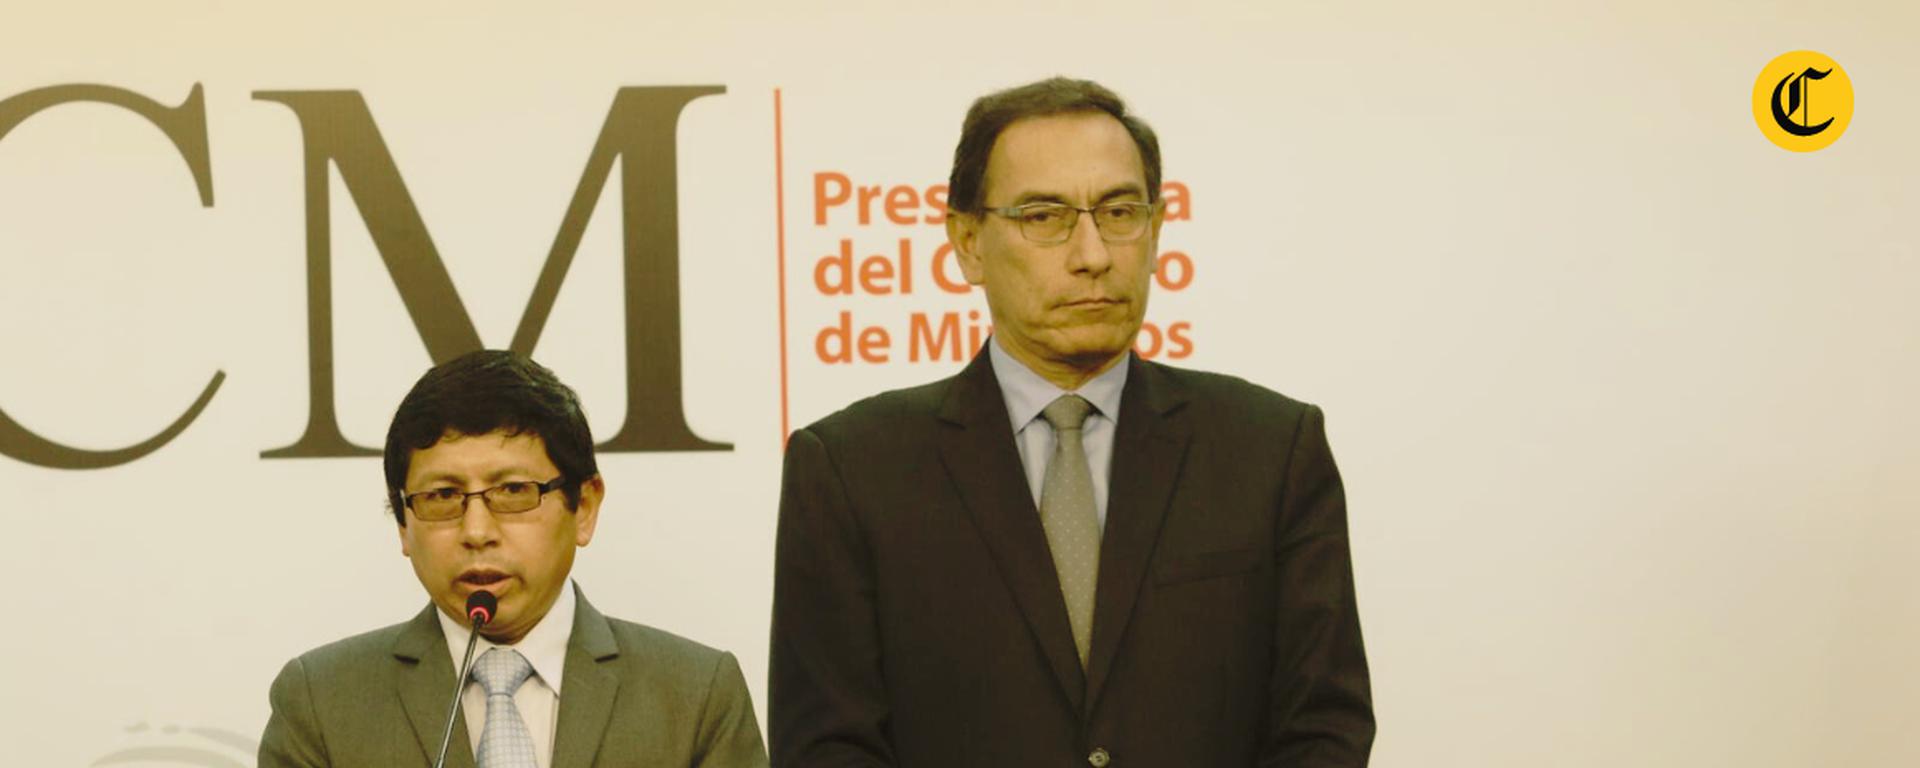 Martín Vizcarra: la historia sobre cómo controló sectores claves desde el gobierno de PPK con la ayuda de “Los moqueguanos” | INFORME